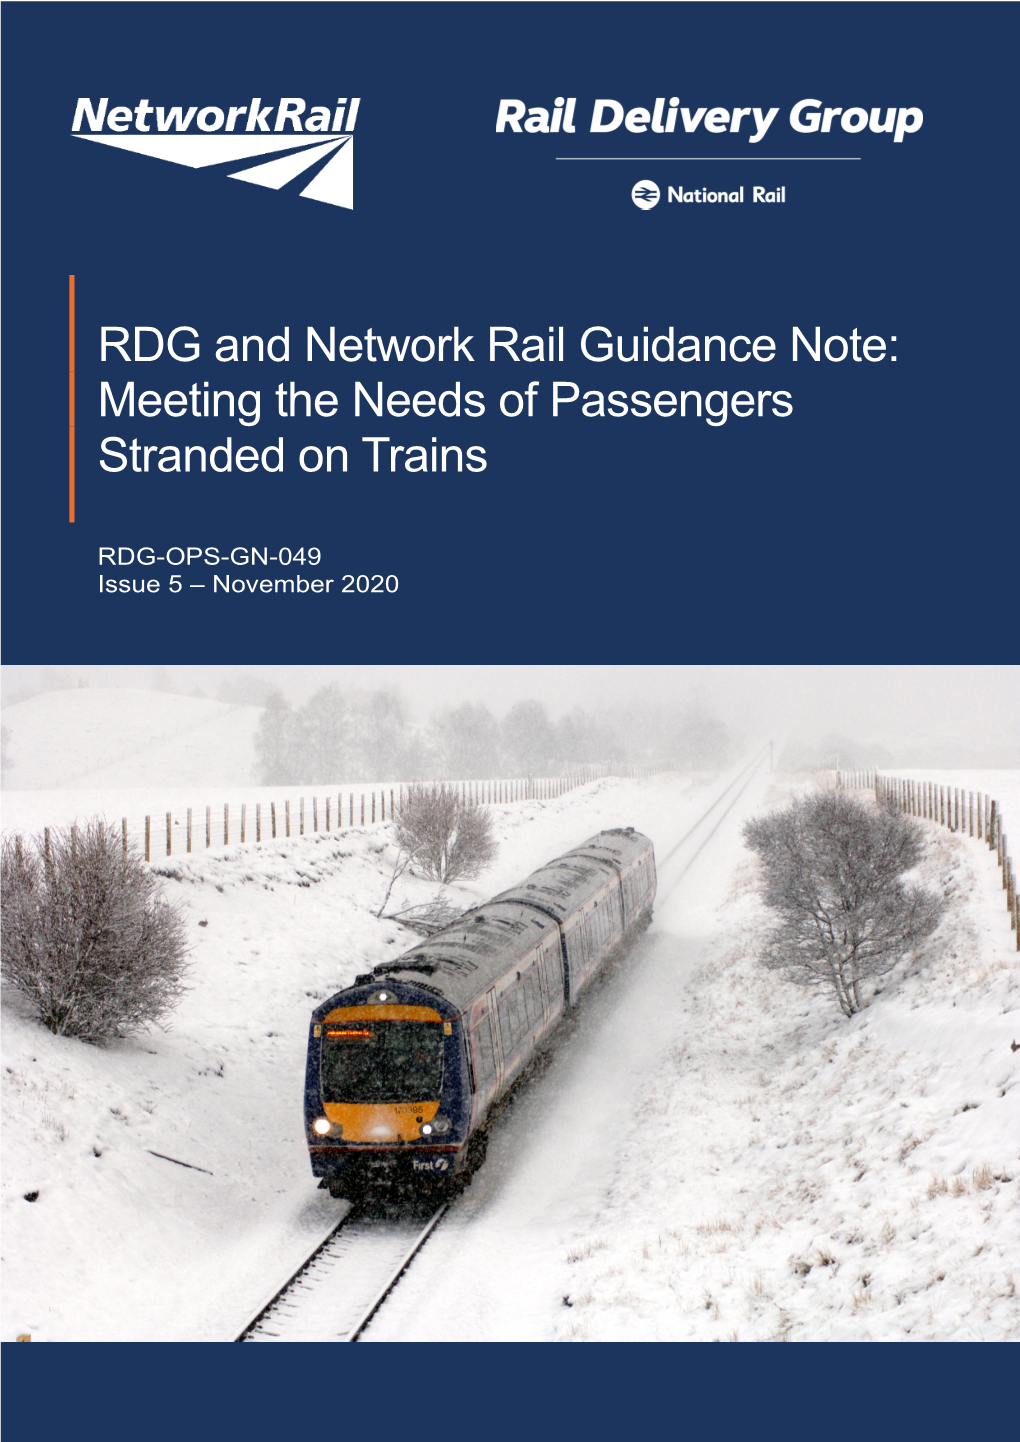 RDG-OPS-GN-049 Issue 5 – November 2020